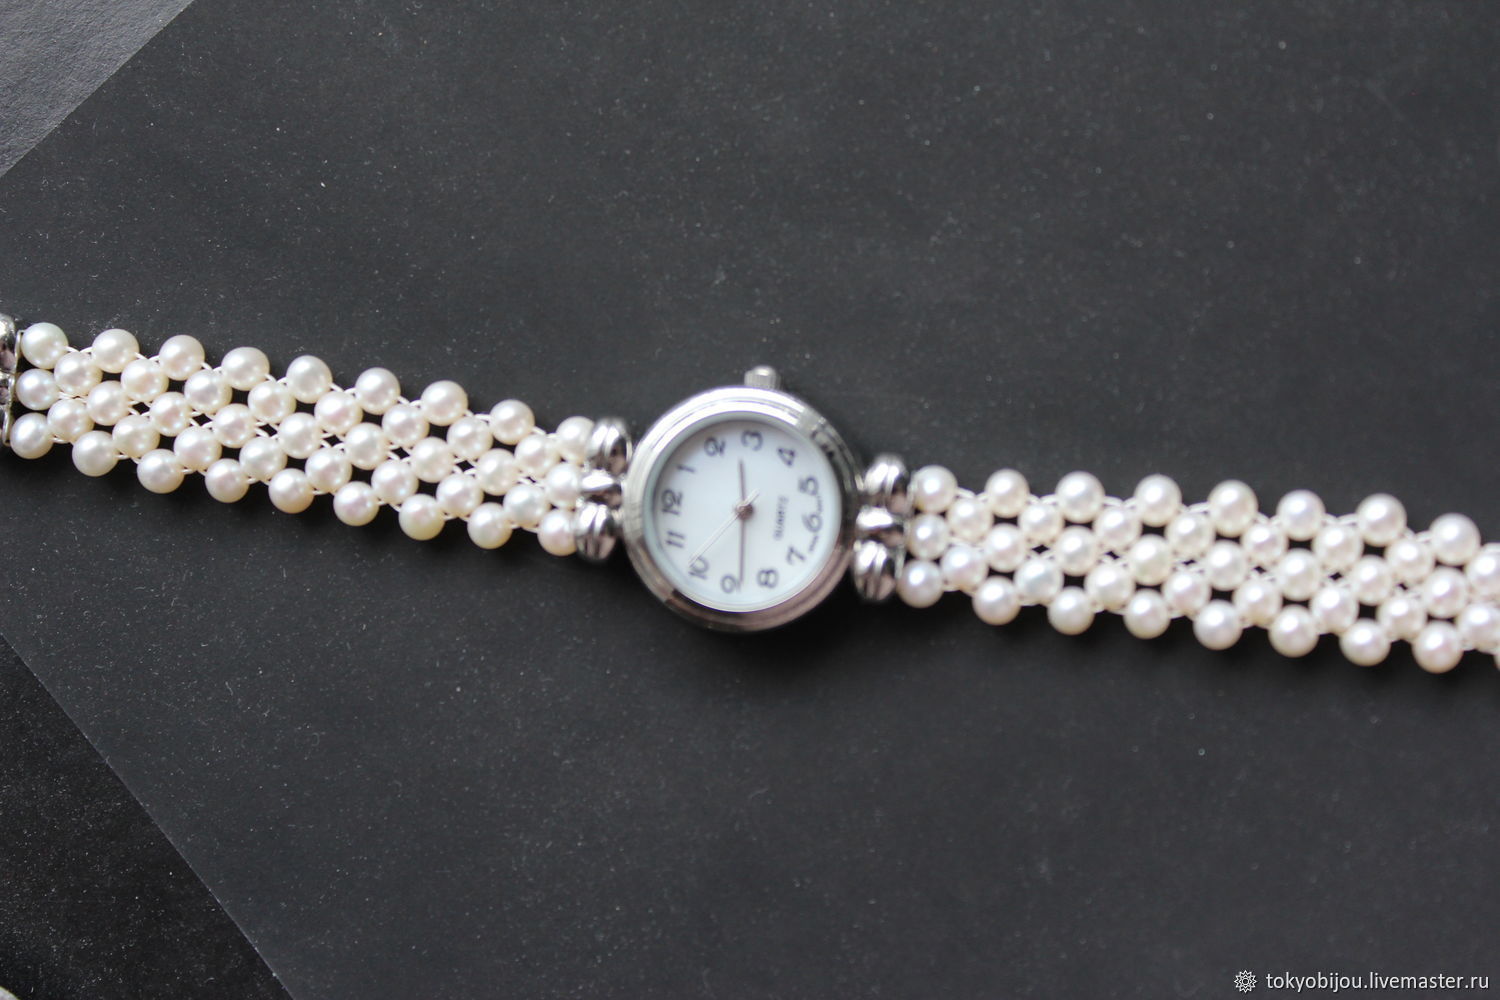 Часы перламутровые. Часы Misaki с жемчугом. Часы с жемчужным браслетом женские. Часы с браслетом из жемчуга. Часы с жемчугом женские наручные.